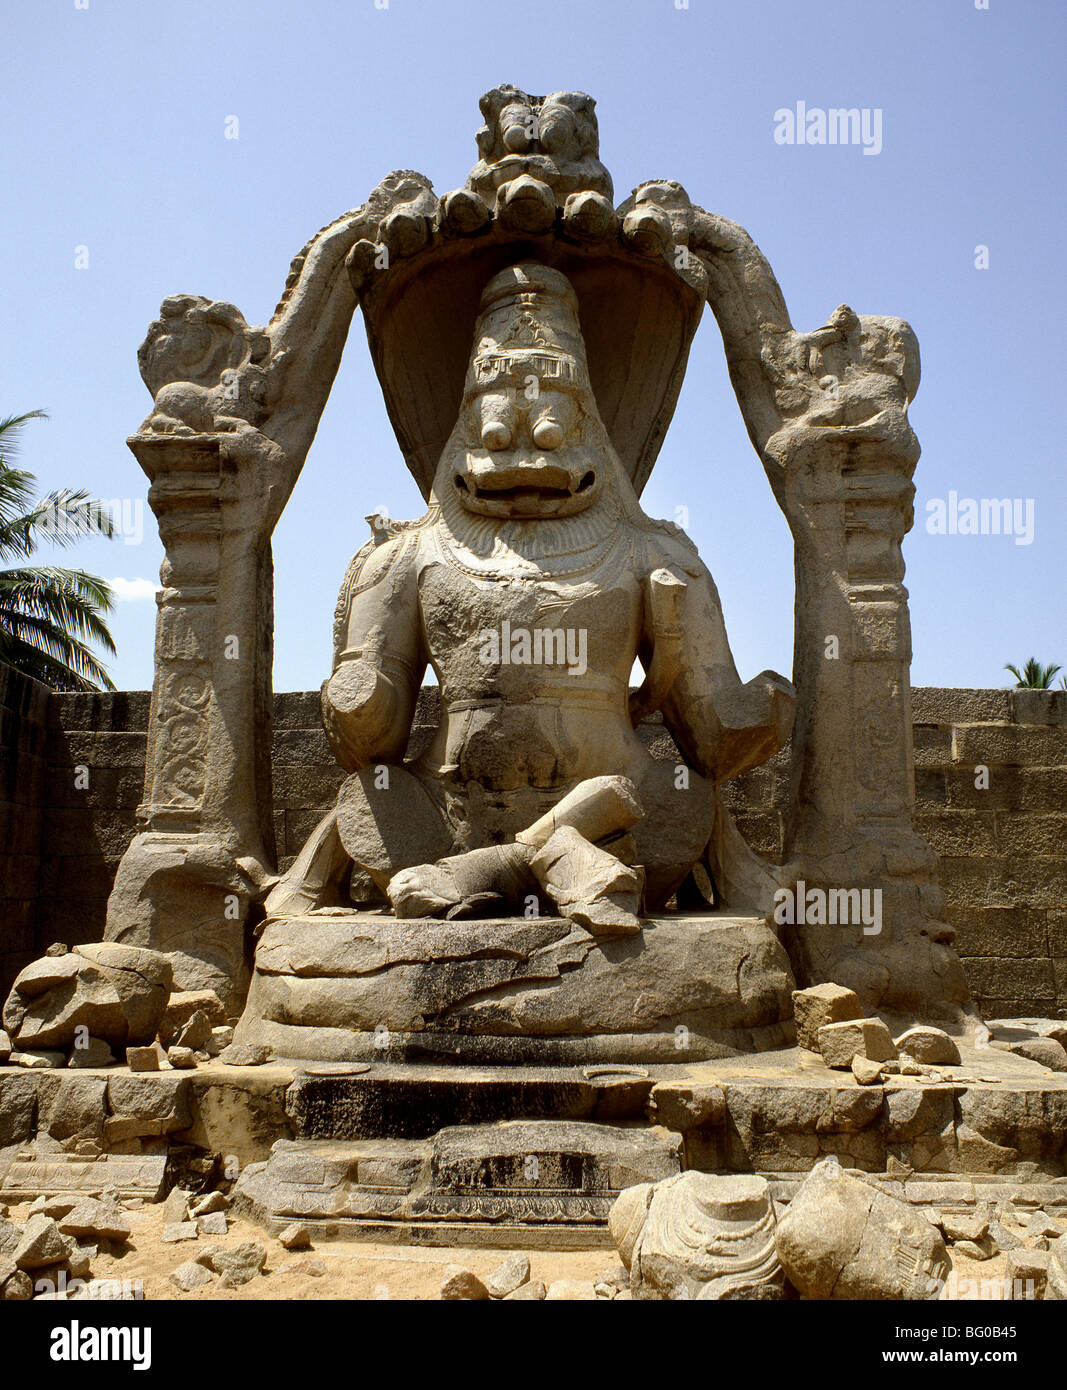 Image de Narasimha dans Hampi, site du patrimoine mondial de l'UNESCO, Karnataka, Inde, Asie Banque D'Images